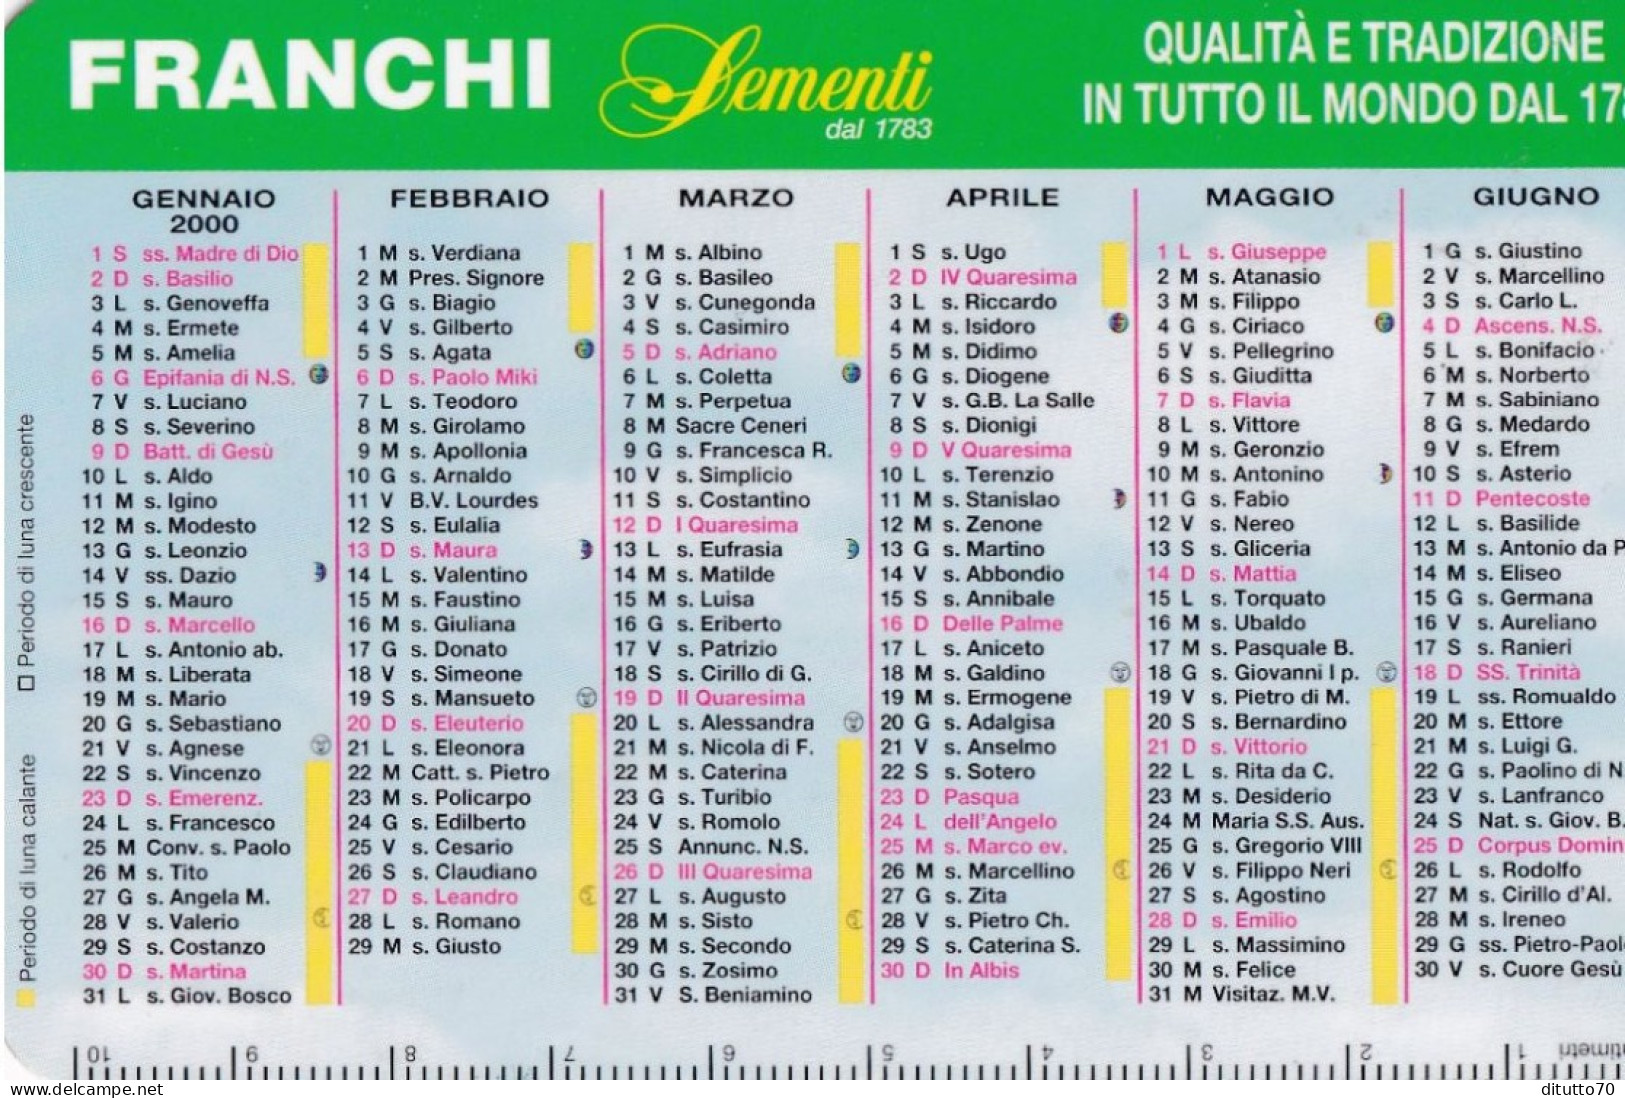 Calendarietto - Franchi - Sementi - Anno 2000 - Tamaño Pequeño : 1991-00